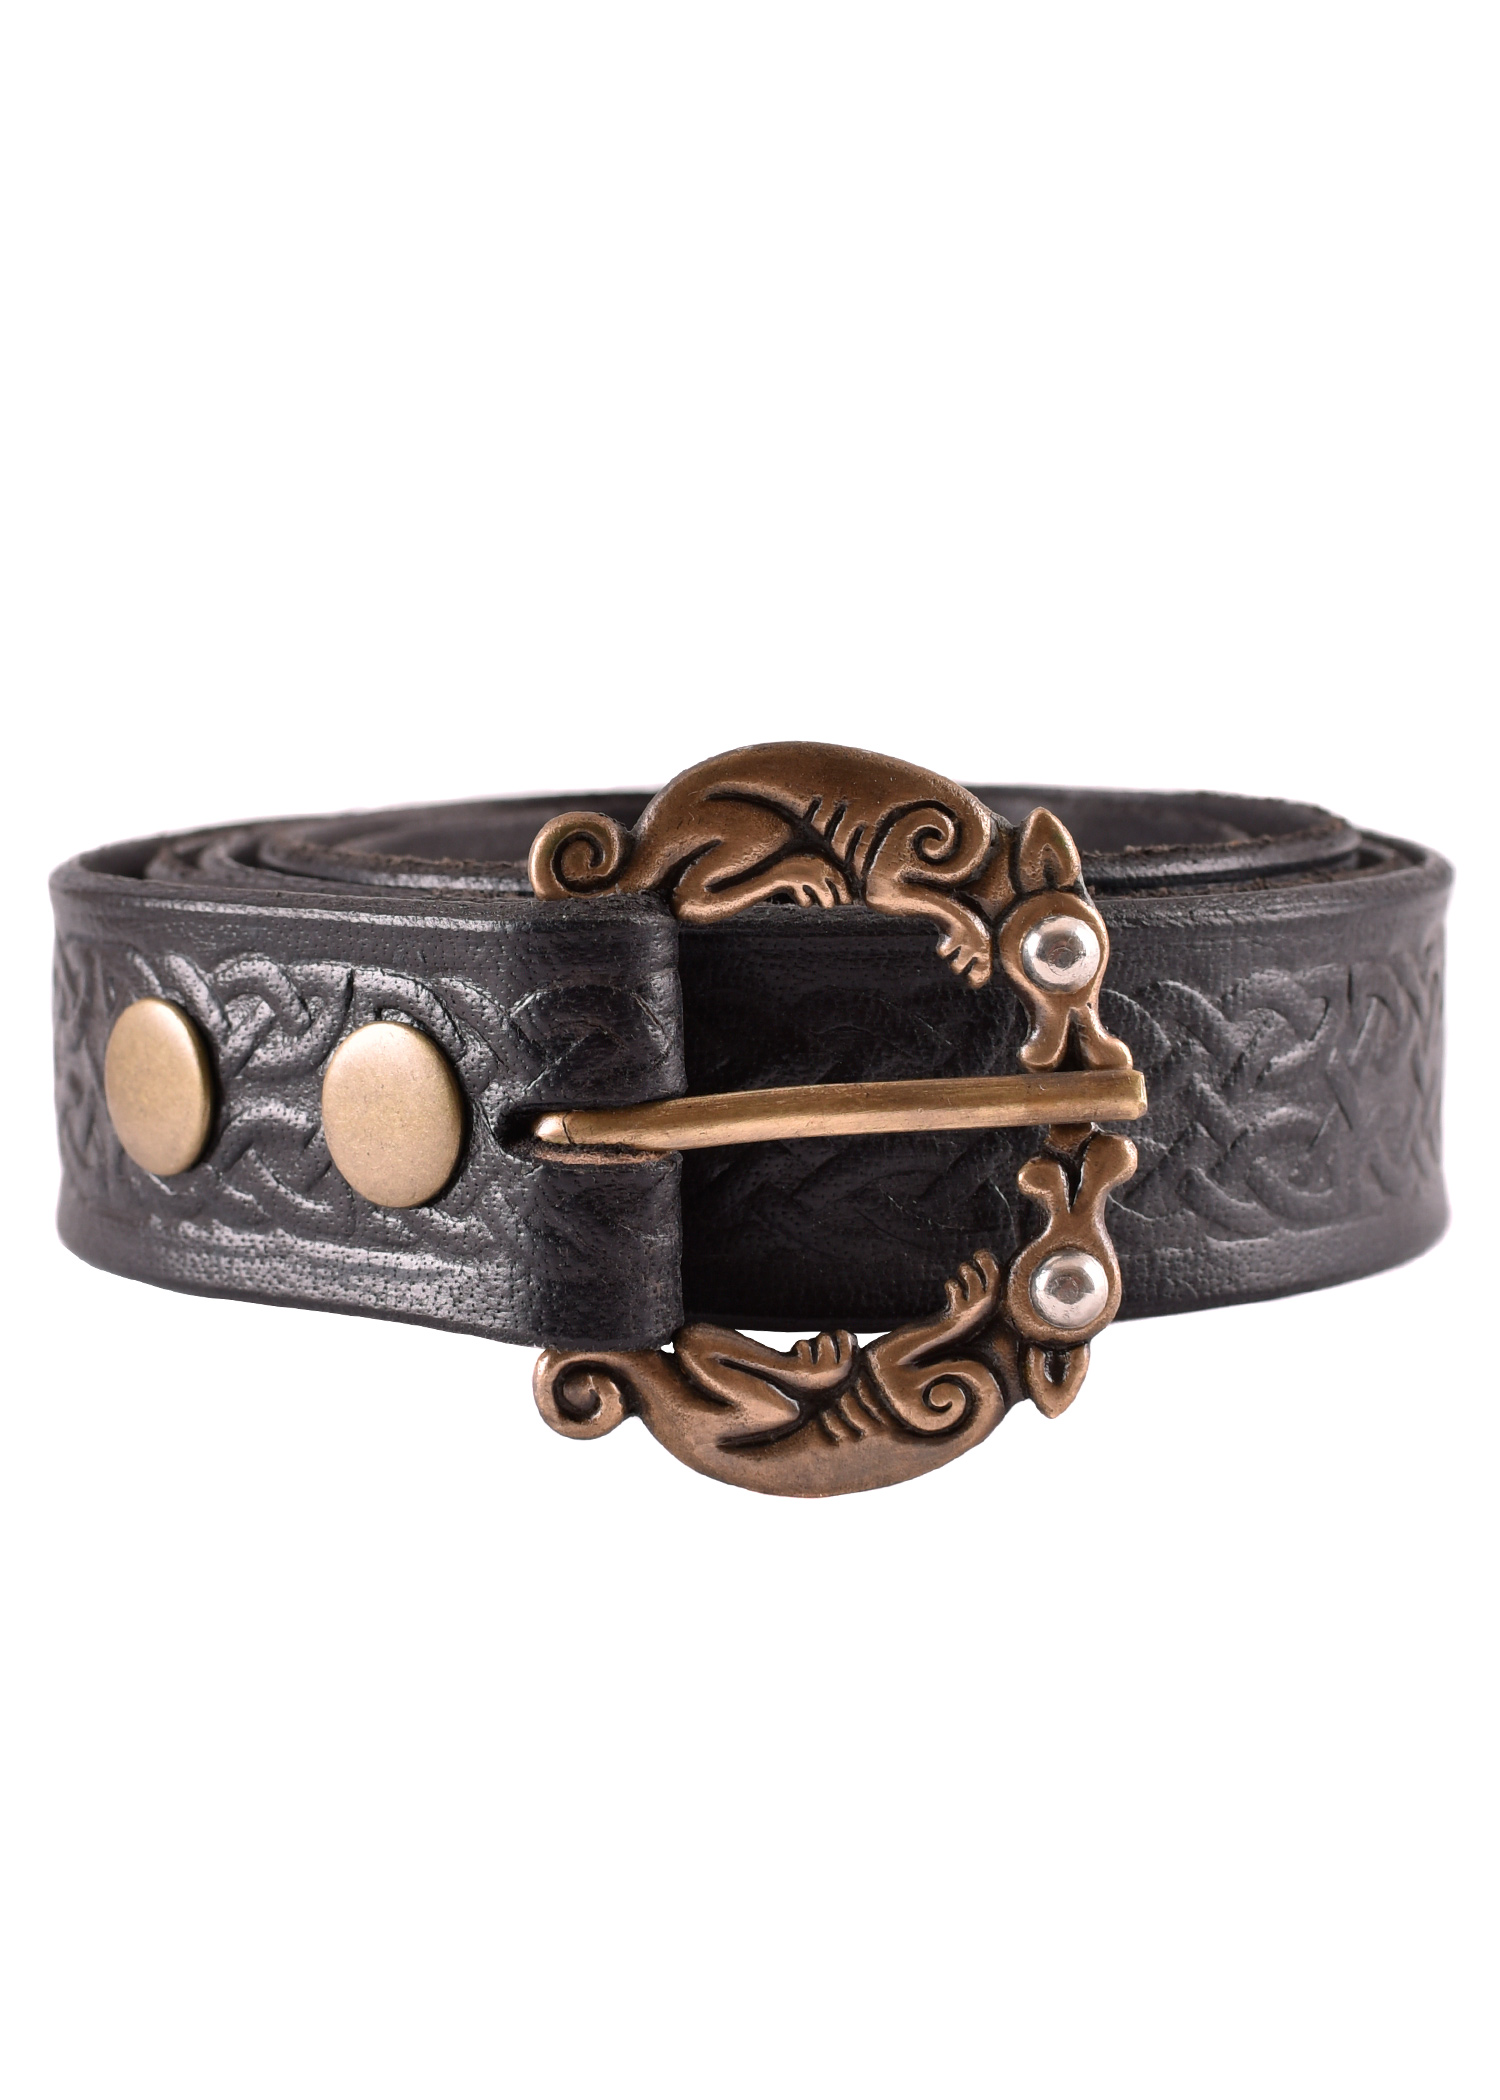 Leather belt in celtic design, black